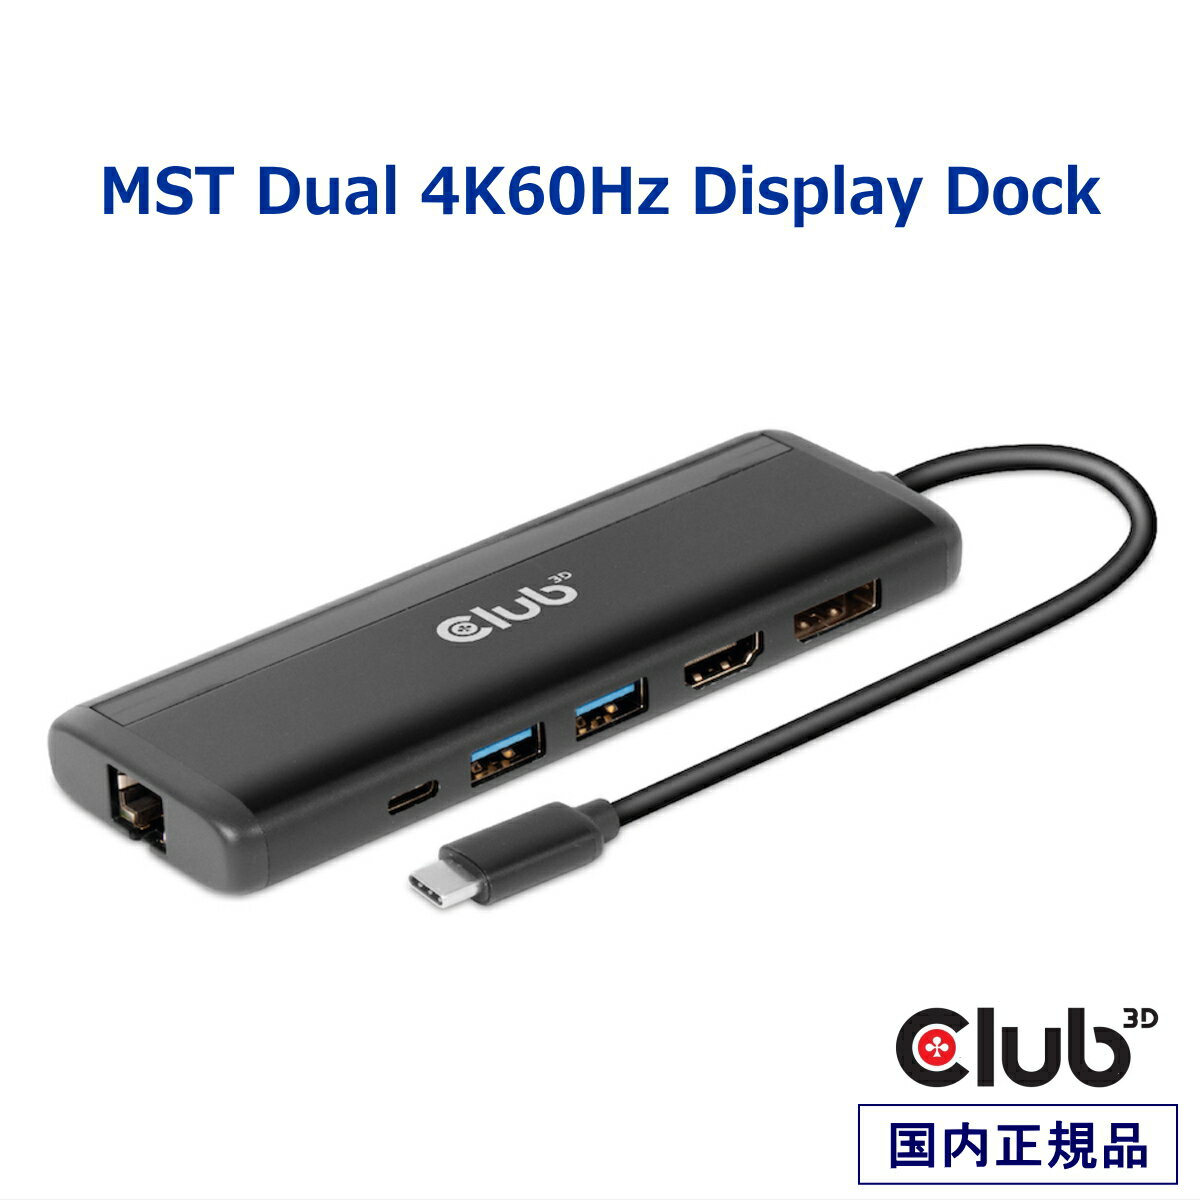 国内正規品 Club 3D USB Gen1 Type-C ドッキングステーション 8-in-1 ハブ デュアルディスプレイ HDMI 8K30Hz / DisplayPort 8K30Hz / 2x USB-A / RJ45ギガビットイーサネット / SD / Micro SD カードスロット / USB-C PD3.0 100W (CSV-1597)